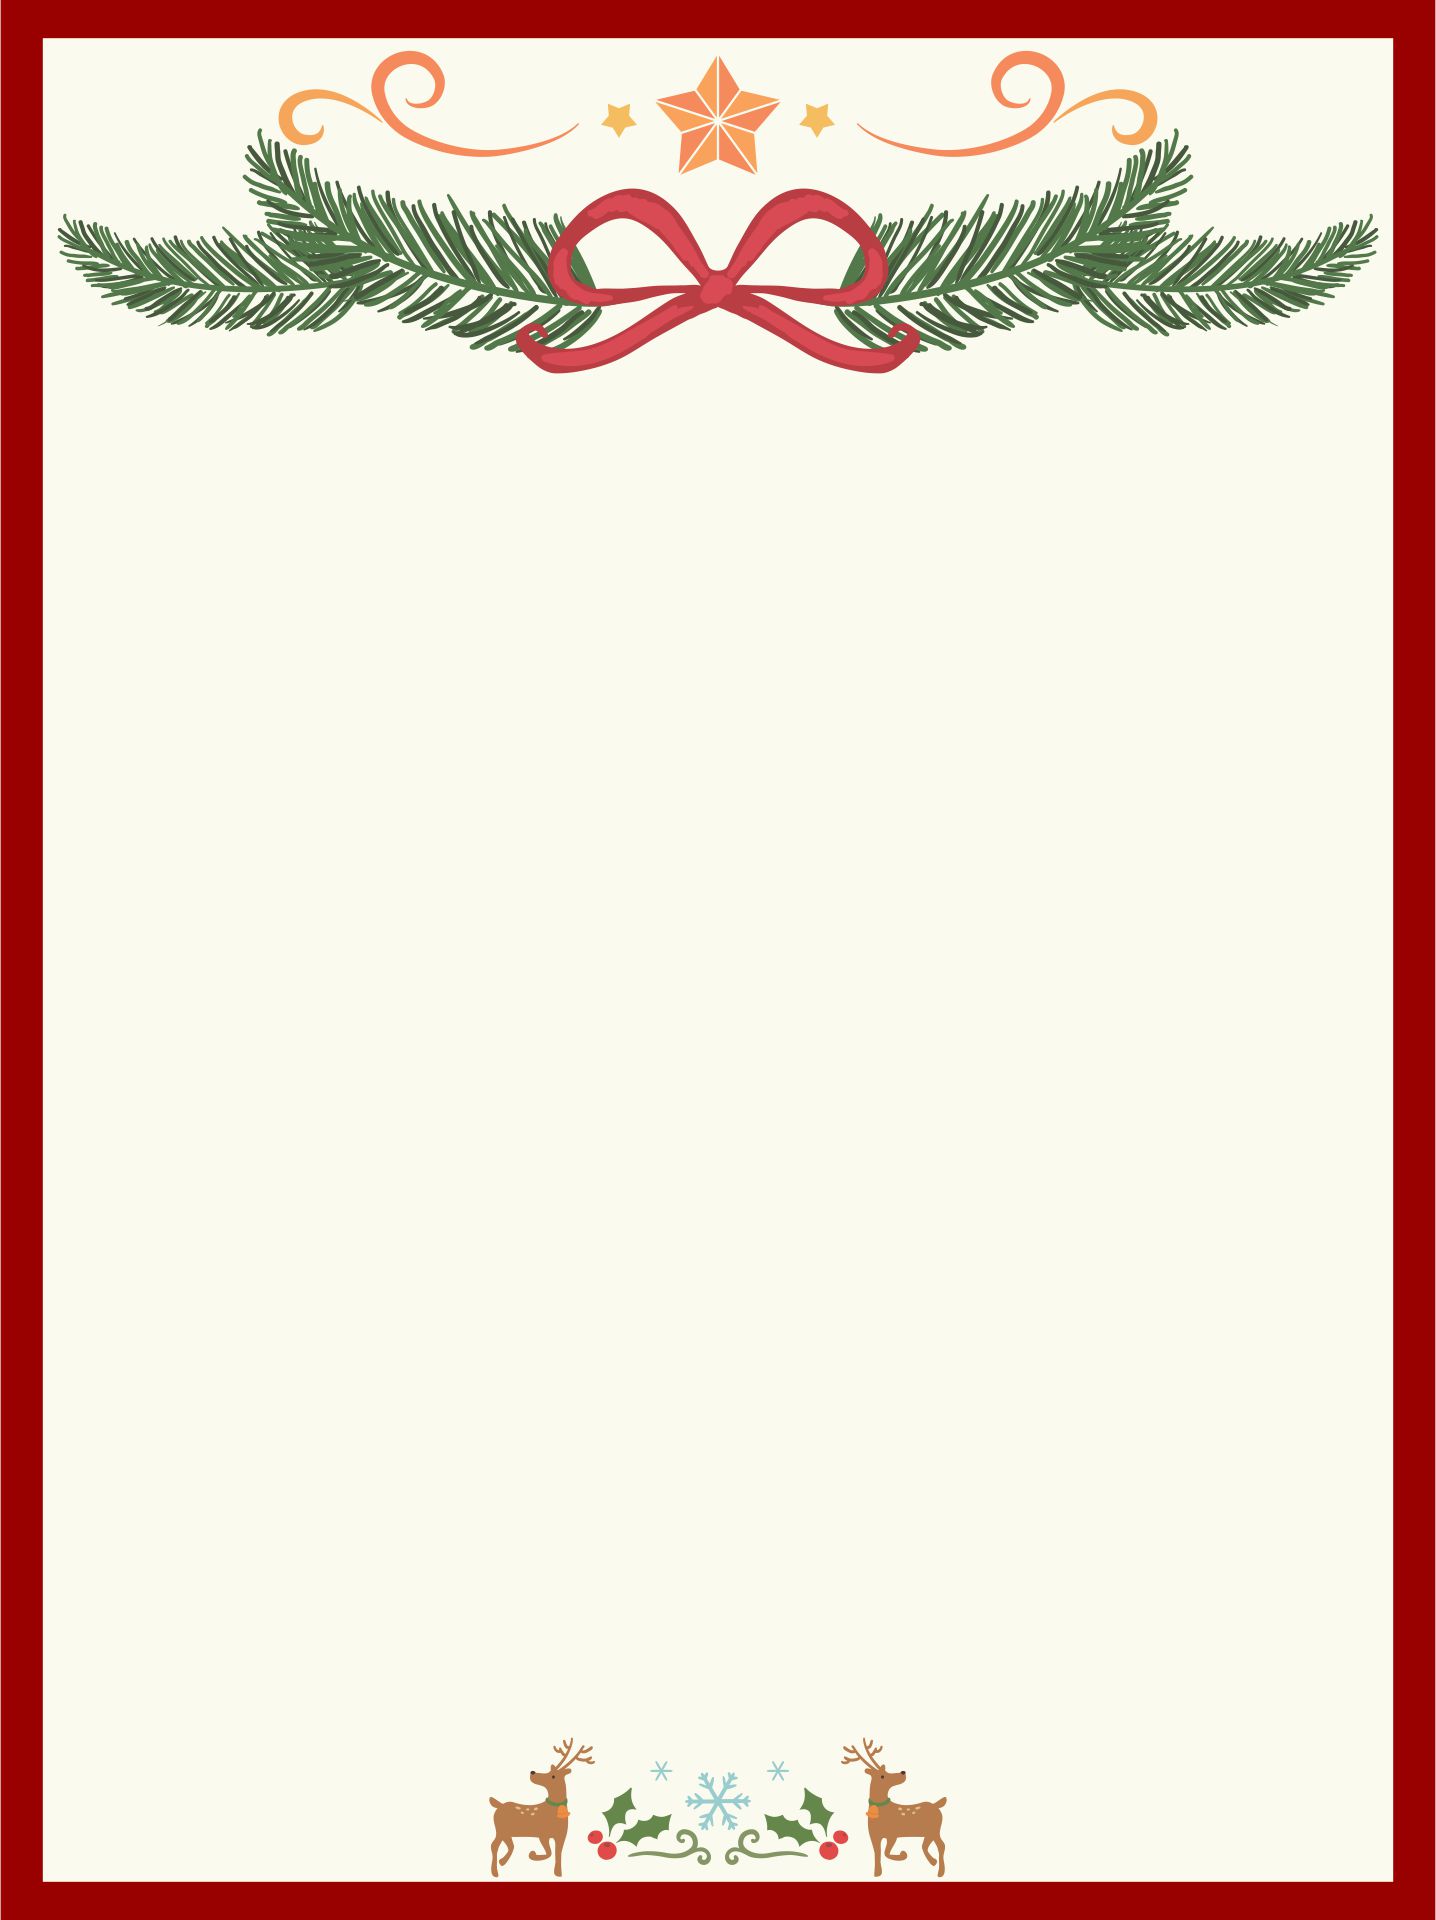 Printable Christmas Stationary Borders_19327